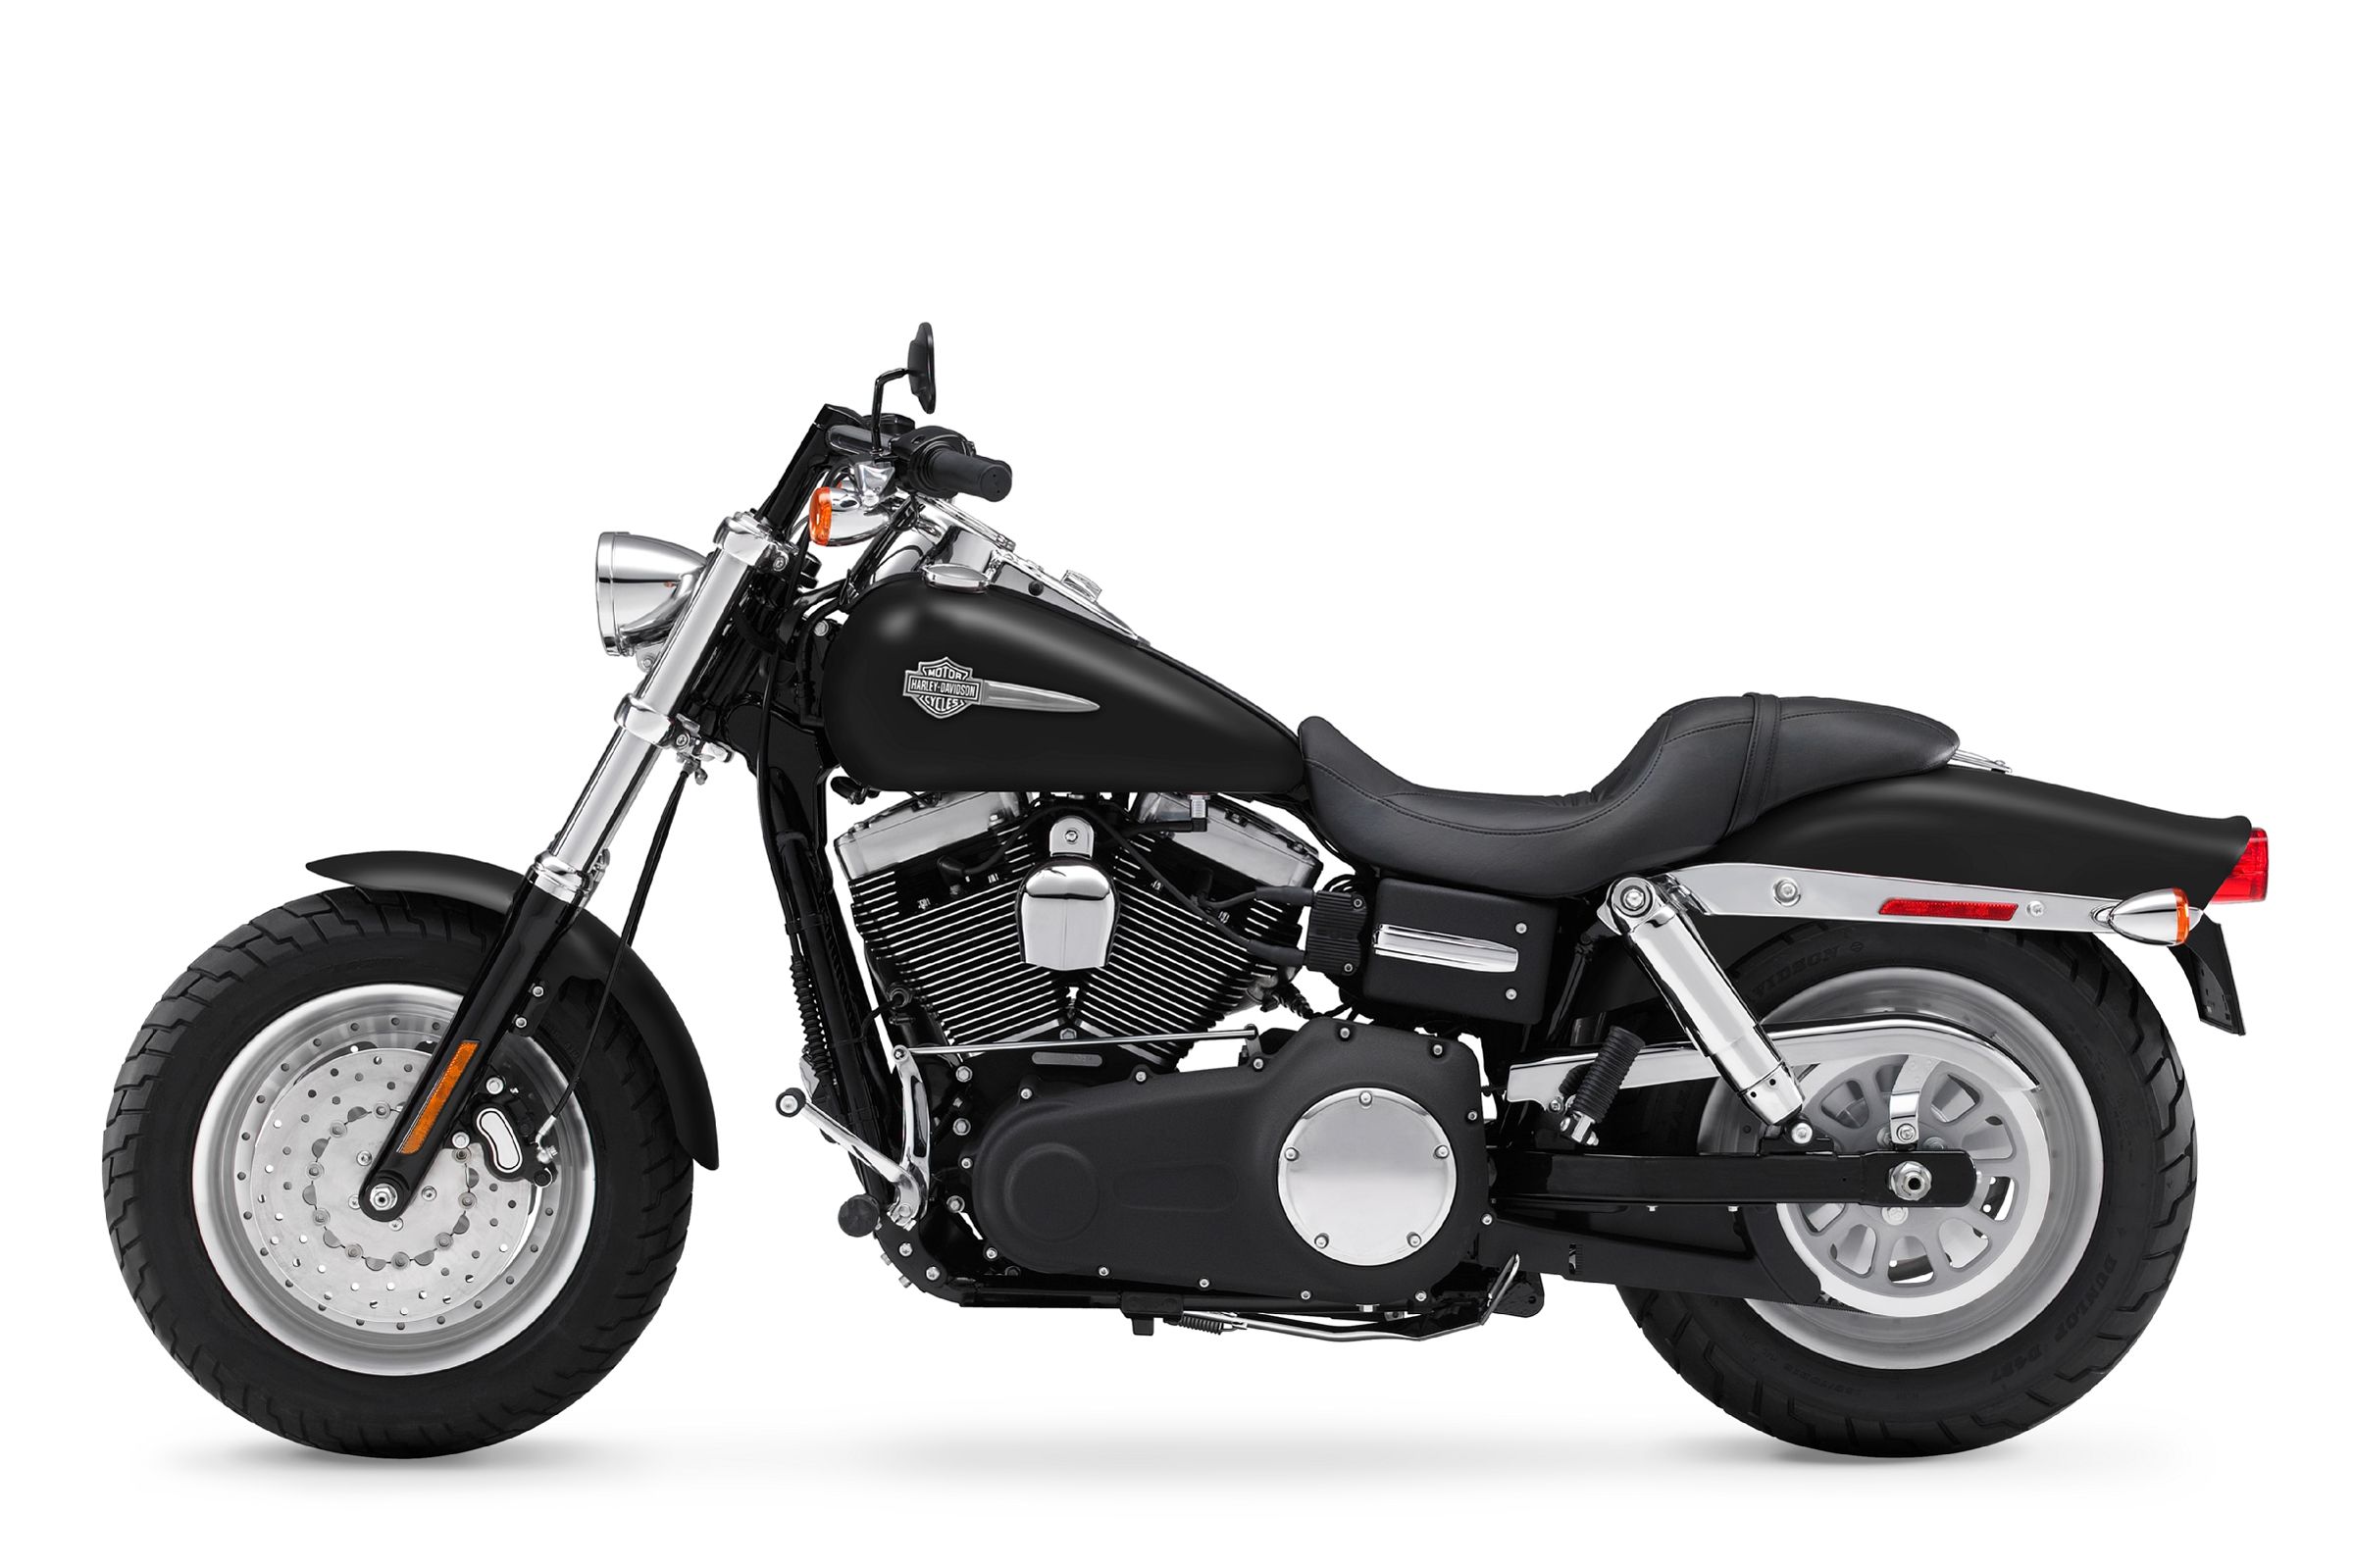  2009 Harley-Davidson Dyna Fat Bob